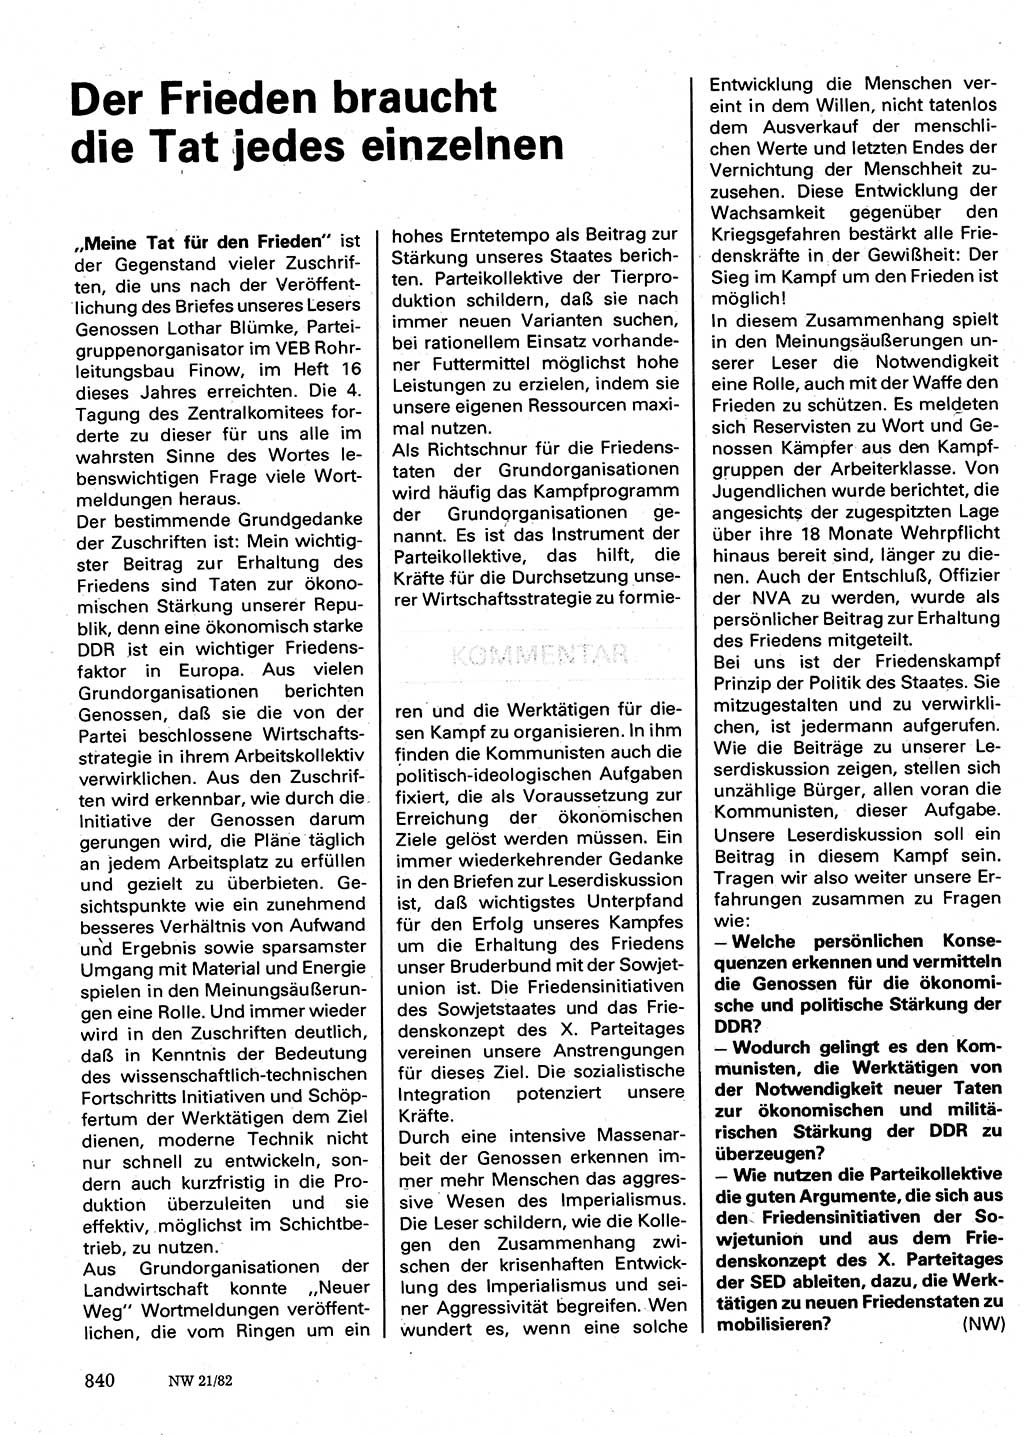 Neuer Weg (NW), Organ des Zentralkomitees (ZK) der SED (Sozialistische Einheitspartei Deutschlands) für Fragen des Parteilebens, 37. Jahrgang [Deutsche Demokratische Republik (DDR)] 1982, Seite 840 (NW ZK SED DDR 1982, S. 840)